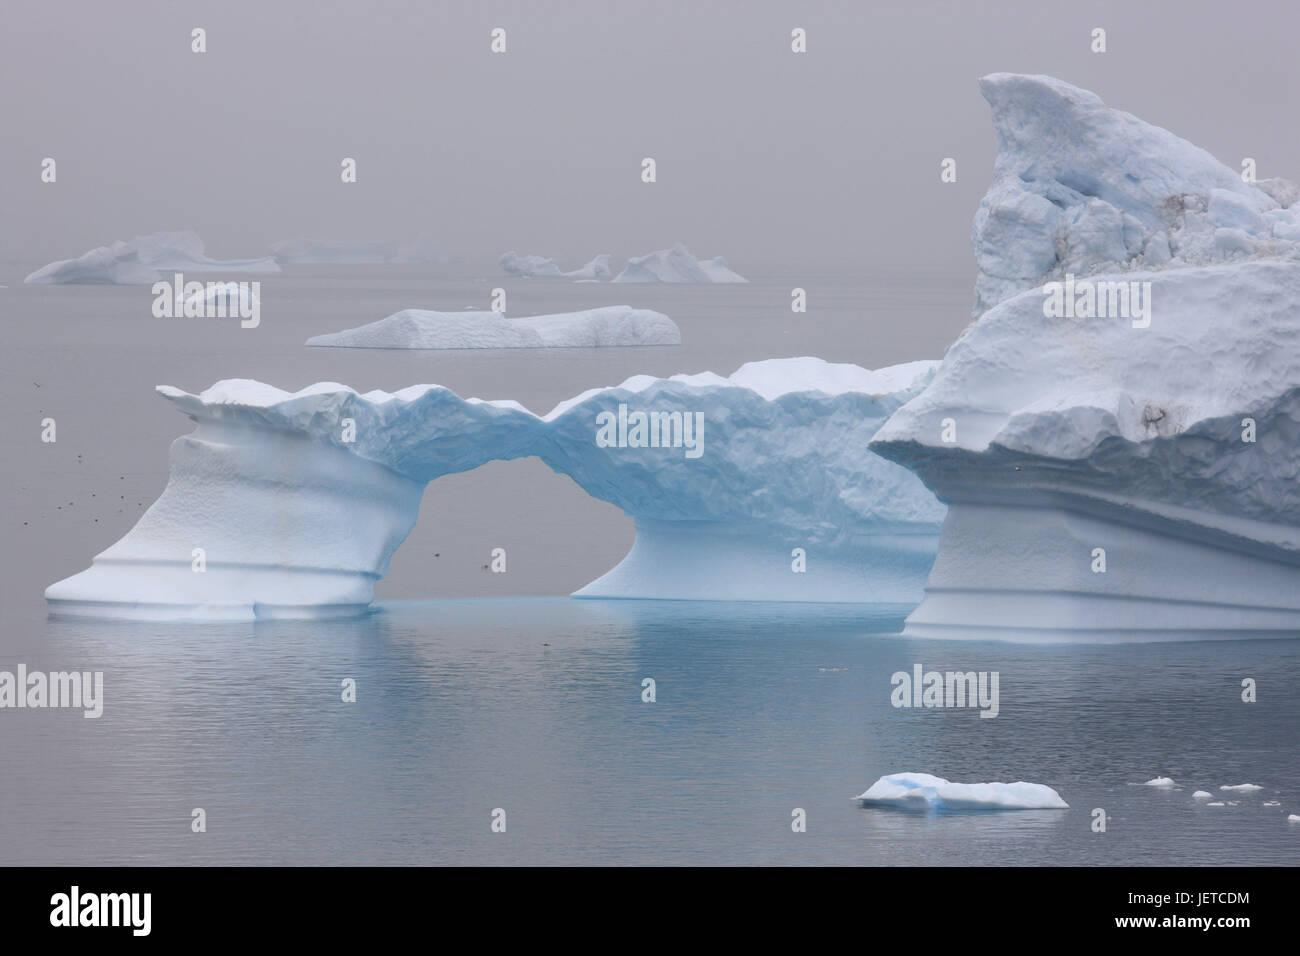 La Groenlandia, Uummannaq, costa, Fjord, iceberg, foggy, nel nord della Groenlandia, destinazione, sul mare Artico, ghiacciaio, esterno, e sharp, acqua, deserte, rocce, chiusura anomala, il ghiacciaio terminazione anomala, la deriva di ghiaccio freddo, riscaldamento climatico, opaco, Foto Stock